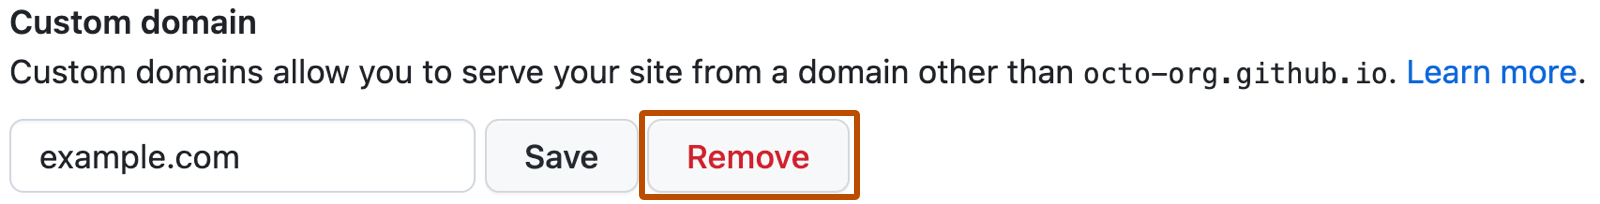 用于保存或删除 GitHub Pages 上的自定义域的设置框的屏幕截图。 在显示“example.com”的文本框右侧有一个红色类型的标记为“删除”的按钮。